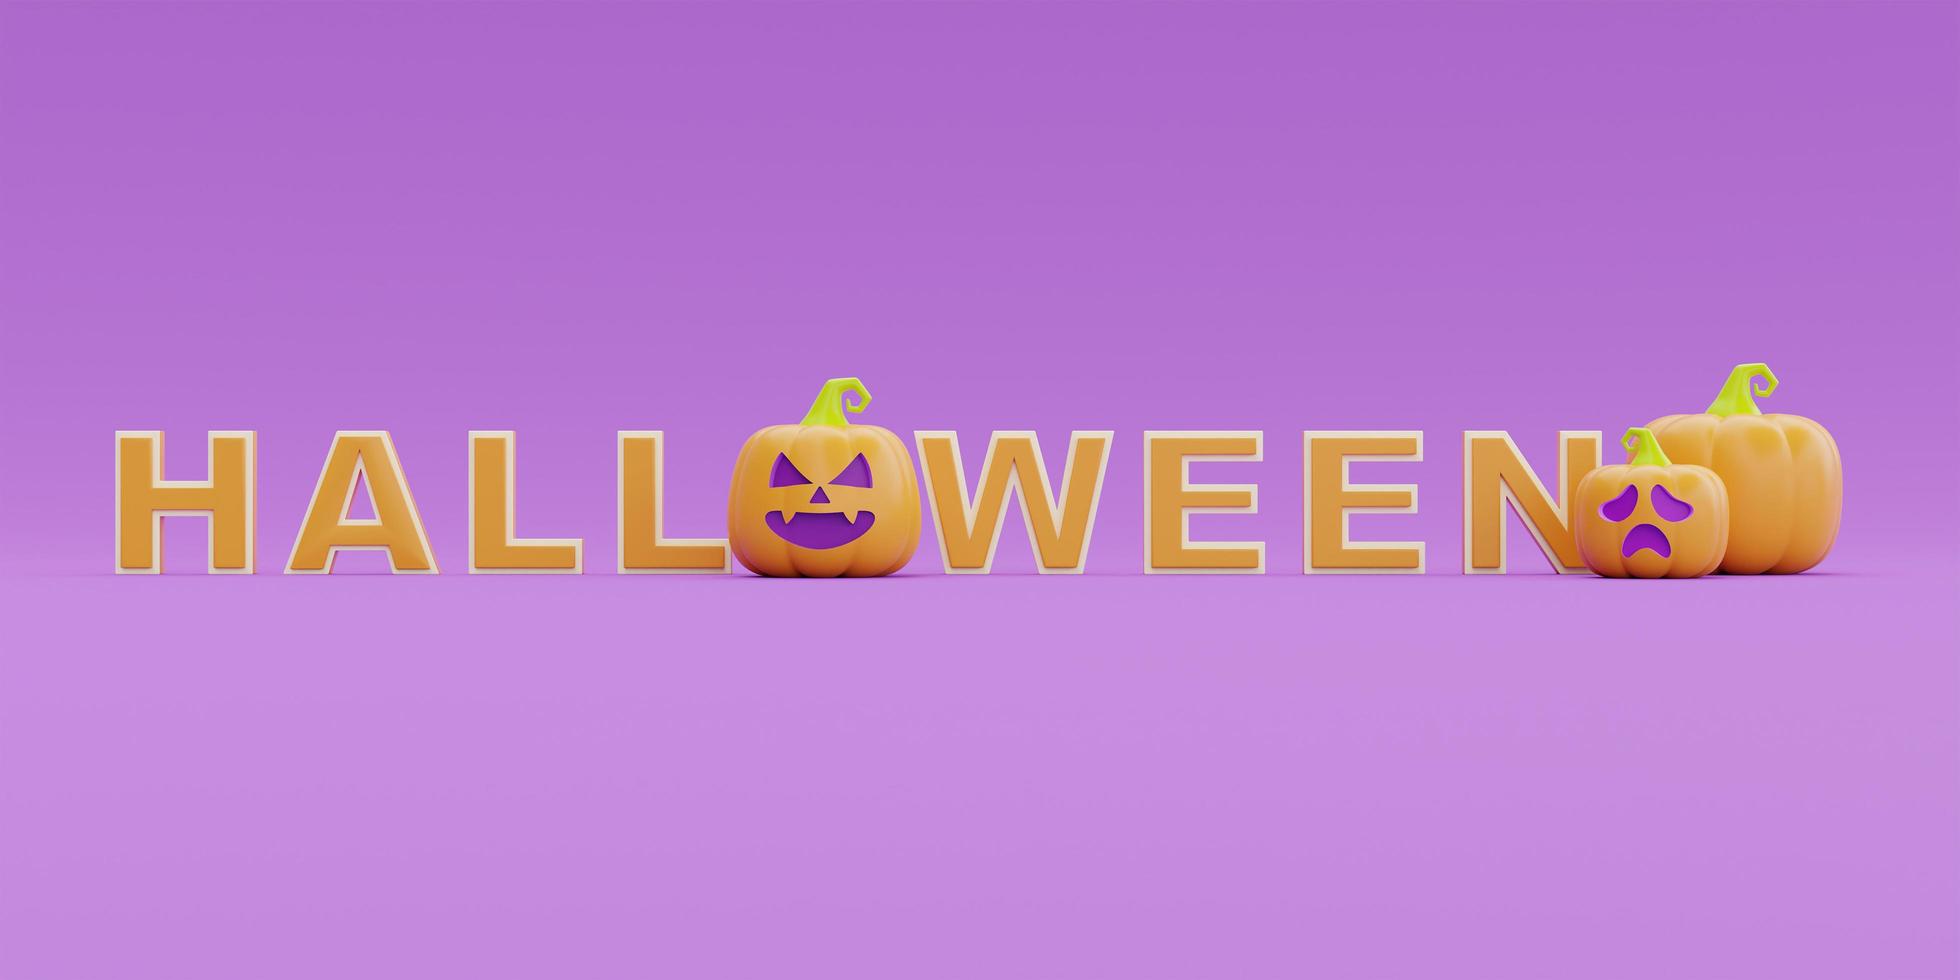 glad halloween med jack-o-lantern pumpor karaktär på lila bakgrund, traditionell oktober semester, 3D-rendering. foto